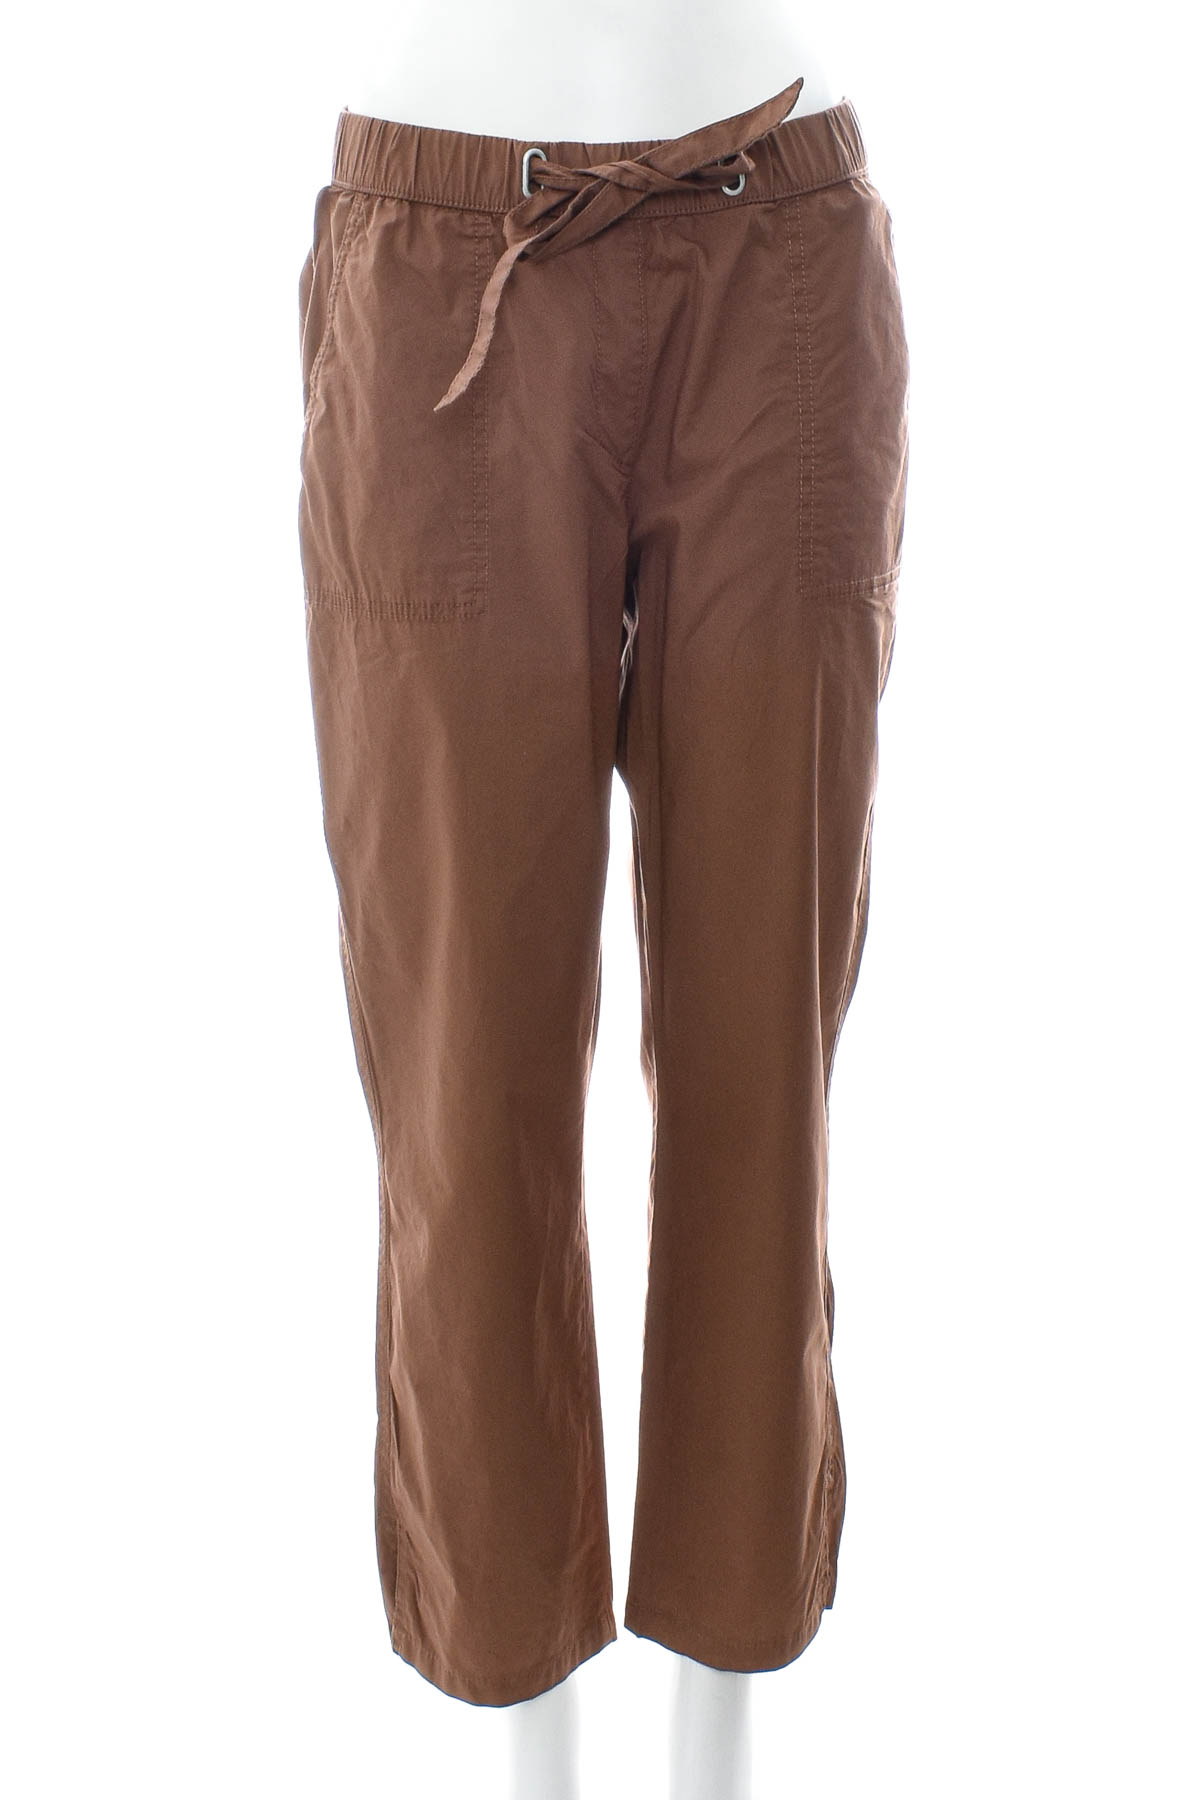 Pantaloni de damă - GERRY WEBER - 0